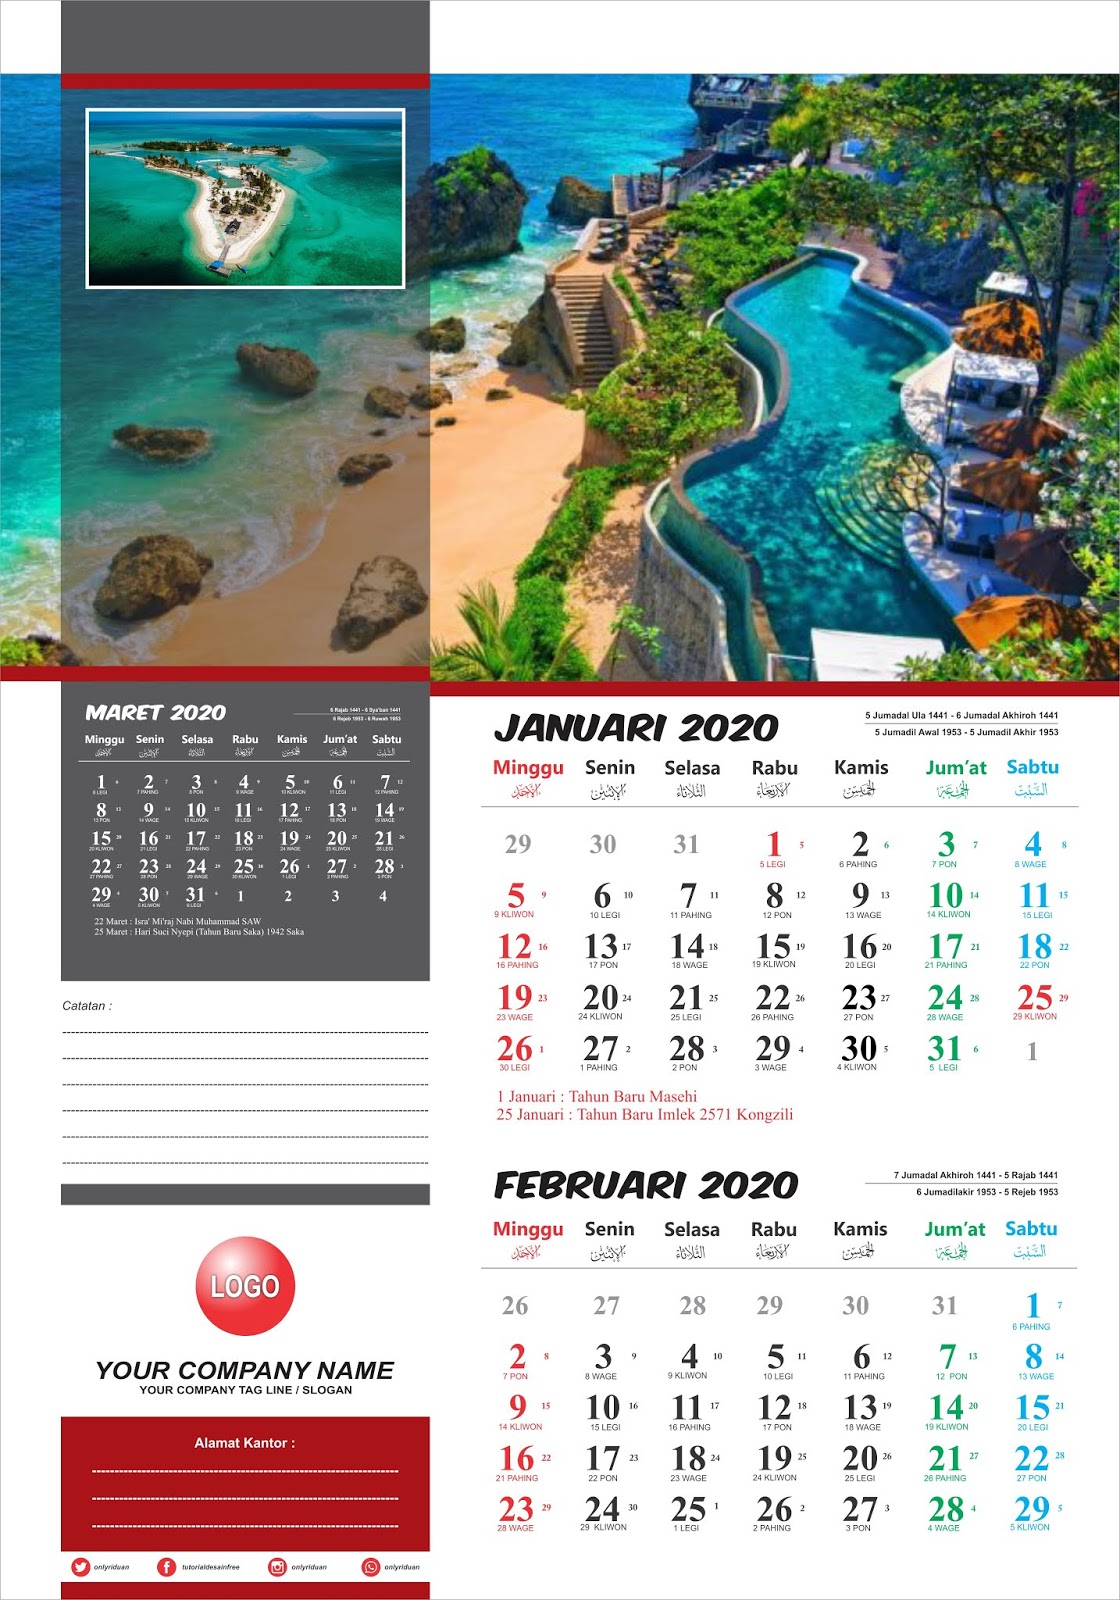 19 Membuat Desain Kalender Dinding Di Coreldraw Images Blog Garuda Cyber